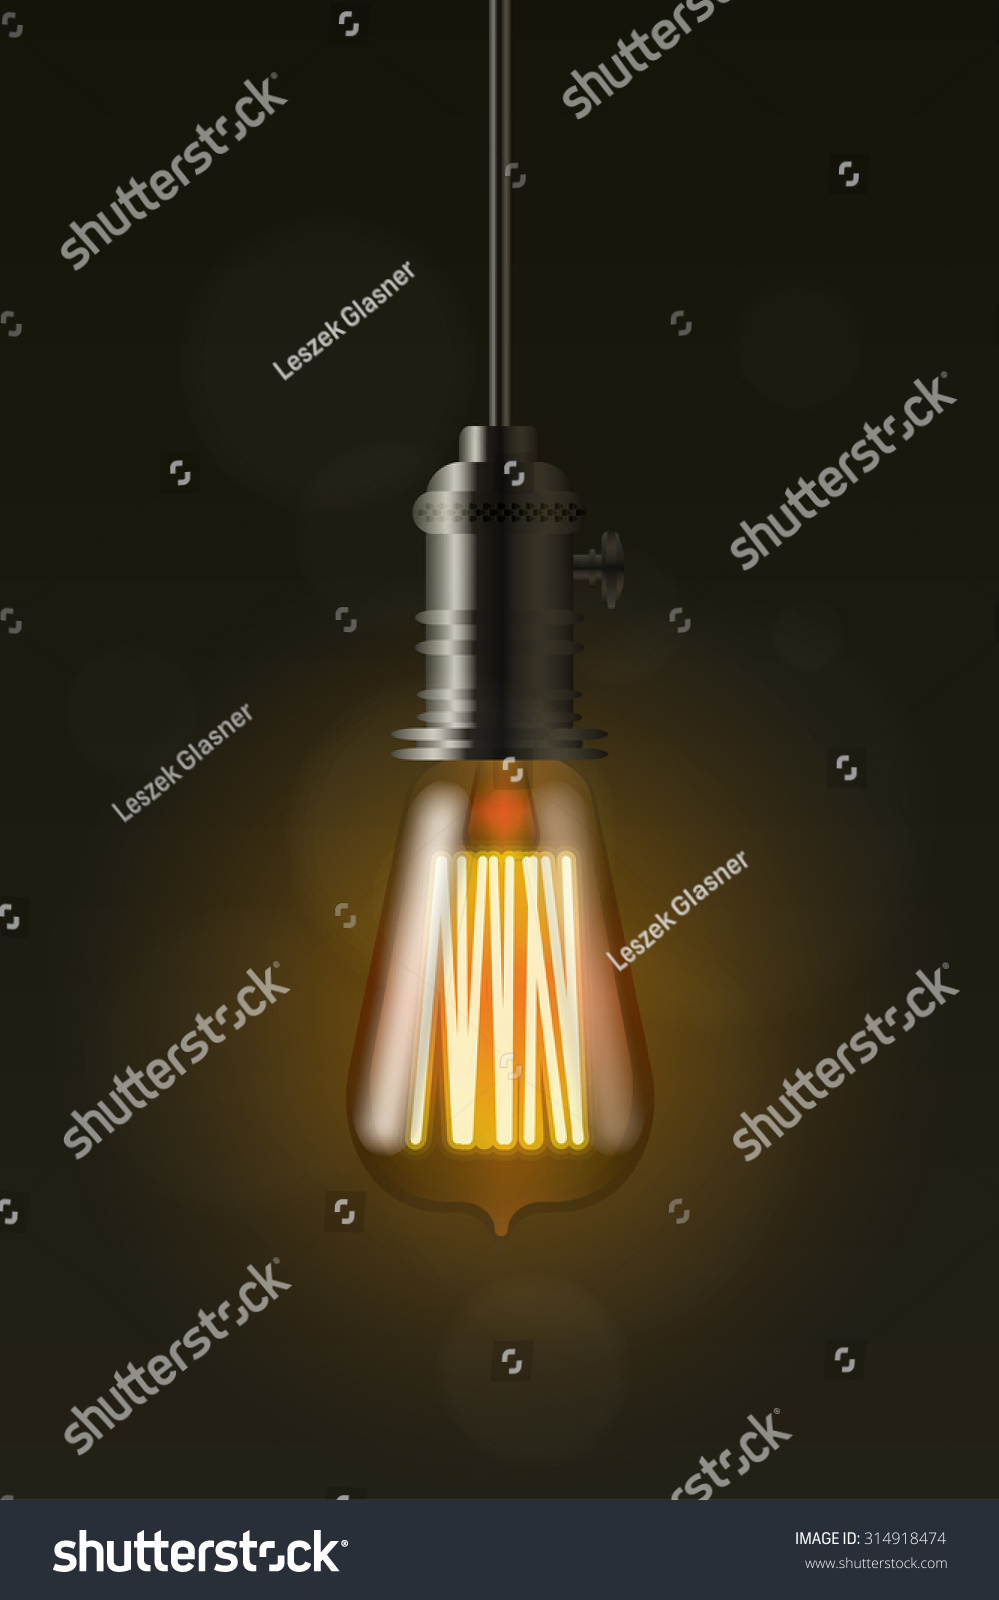 Edison Light Bulb On Dark Vector Stock Vector 314918474 - Shutterstock